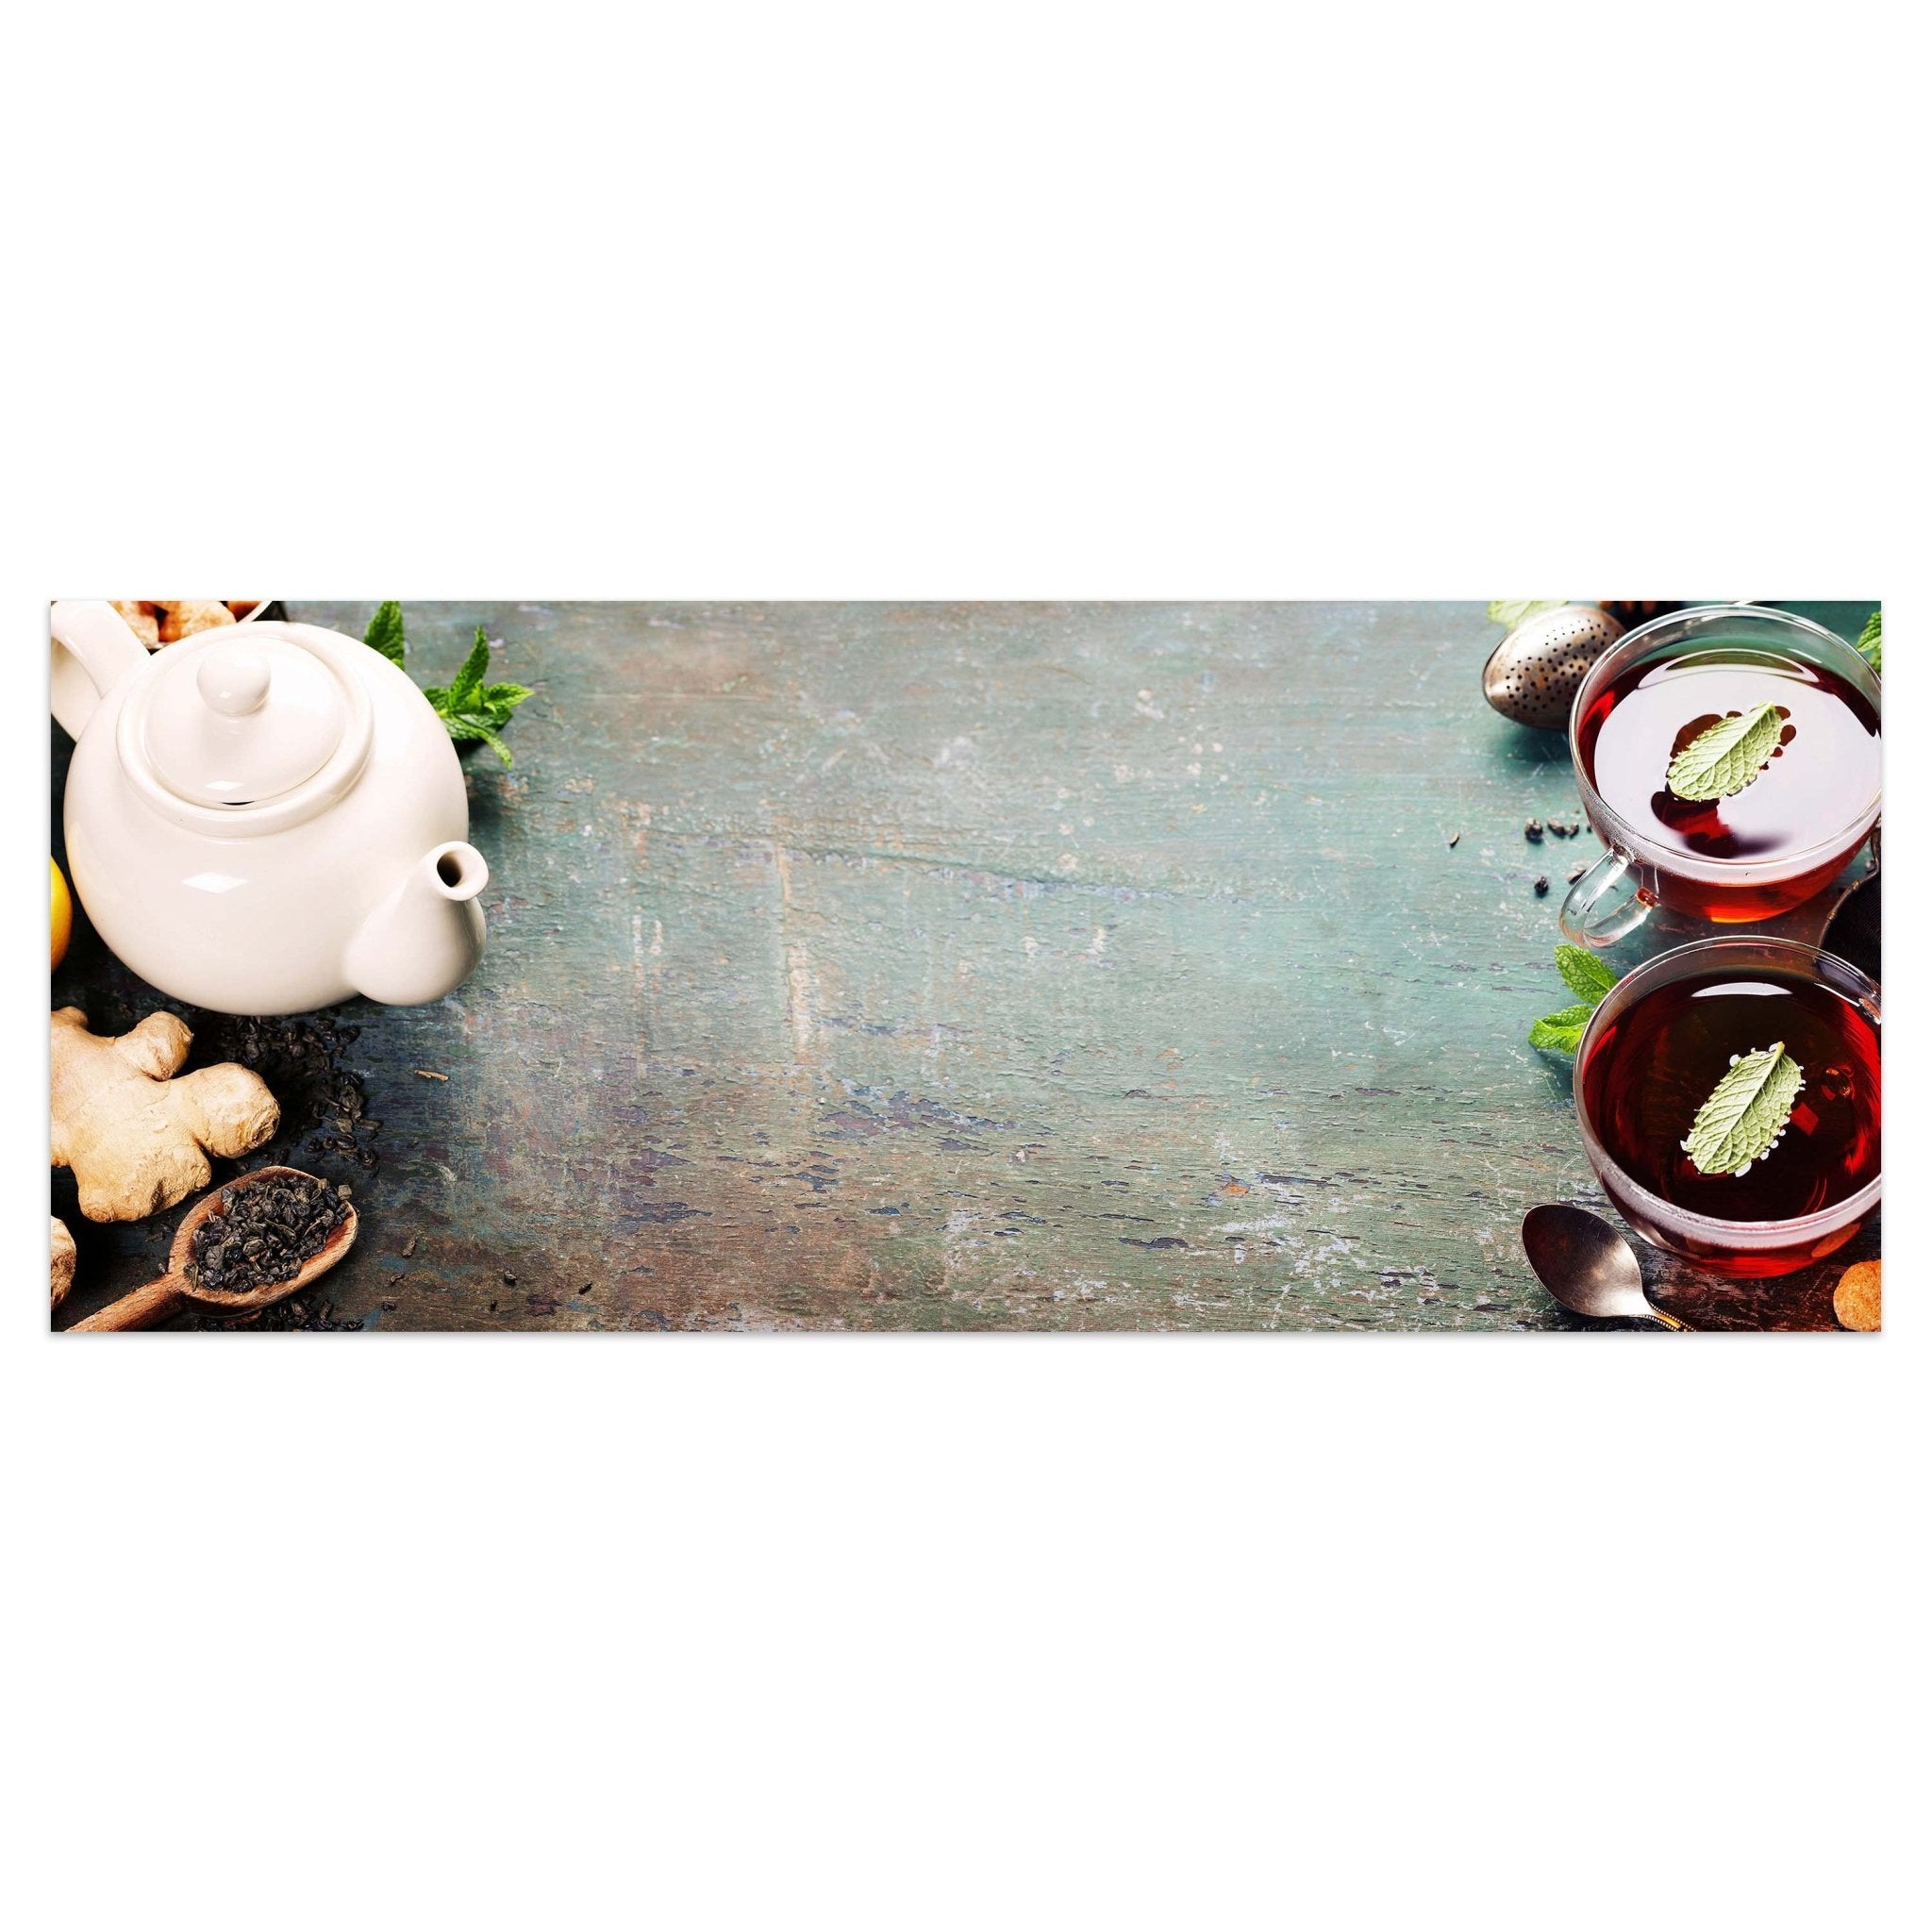 Leinwandbild Tee mit Minze, Ingwer und Zitrone M0834 kaufen - Bild 1